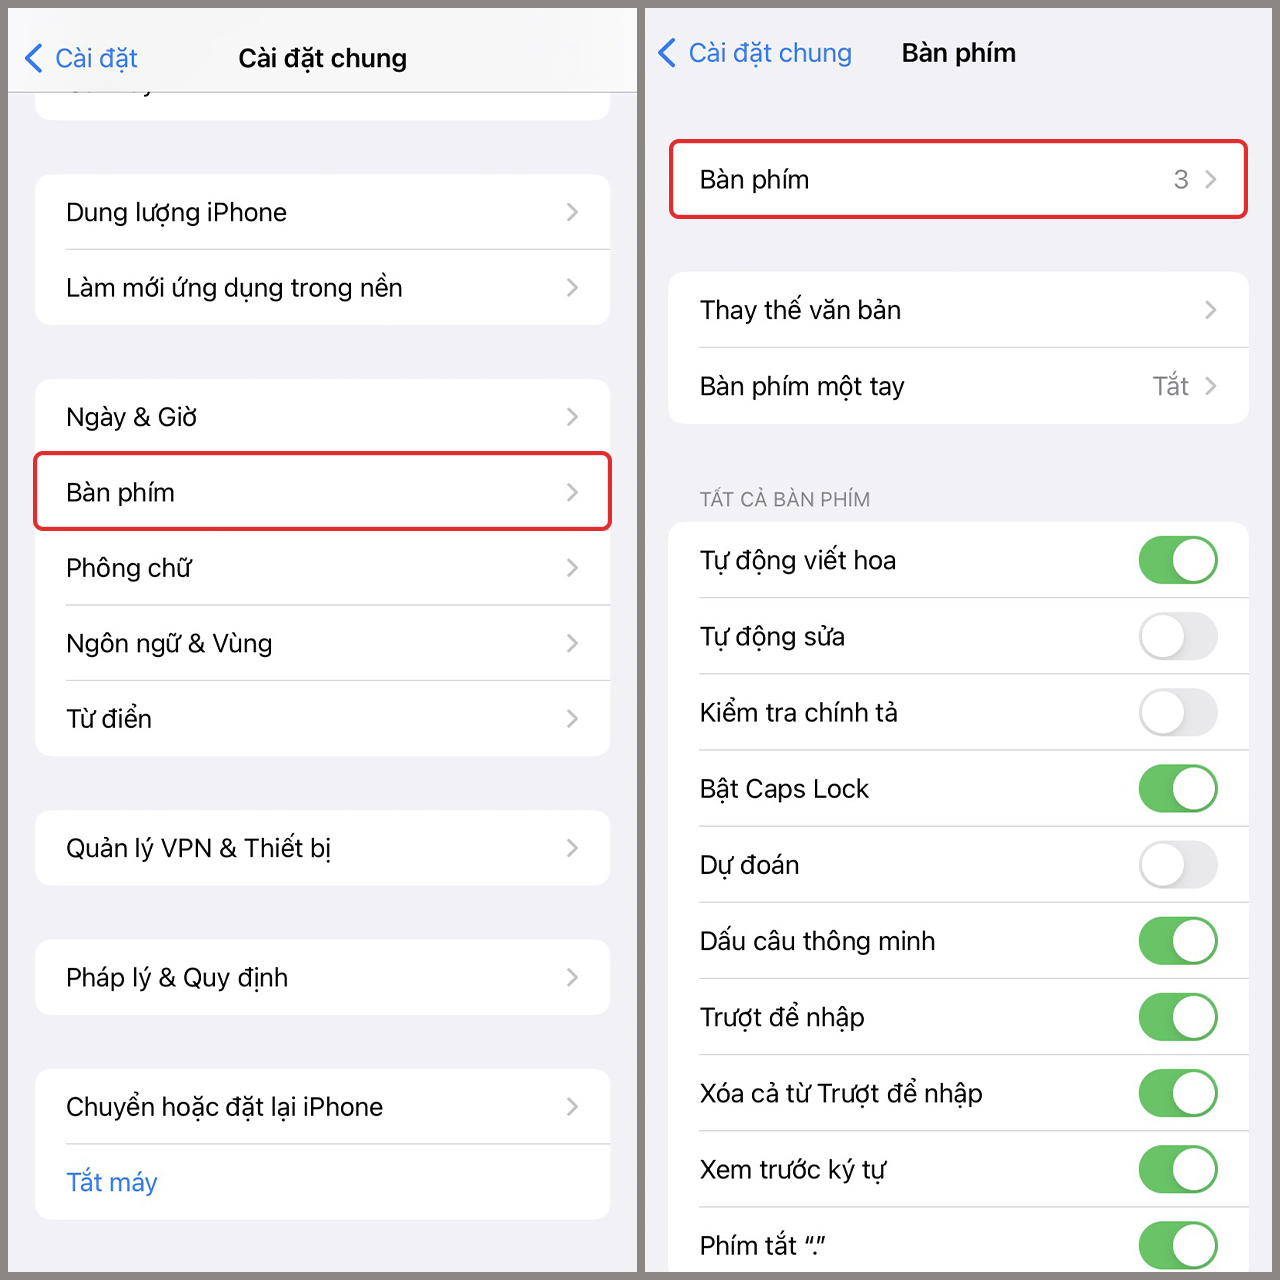 Lỗi bàn phím tiếng Việt trên iOS 16: Nếu bạn gặp phải lỗi bàn phím tiếng Việt trên iOS 16, hãy yên tâm vì Apple đã đưa ra cập nhật mới, giúp khắc phục vấn đề này một cách nhanh chóng và hiệu quả. Vì vậy, bạn có thể tiếp tục sử dụng điện thoại của mình mà không cần phải lo lắng về lỗi bàn phím nữa. Hãy bấm vào hình ảnh để tìm hiểu thêm về cập nhật này nhé!